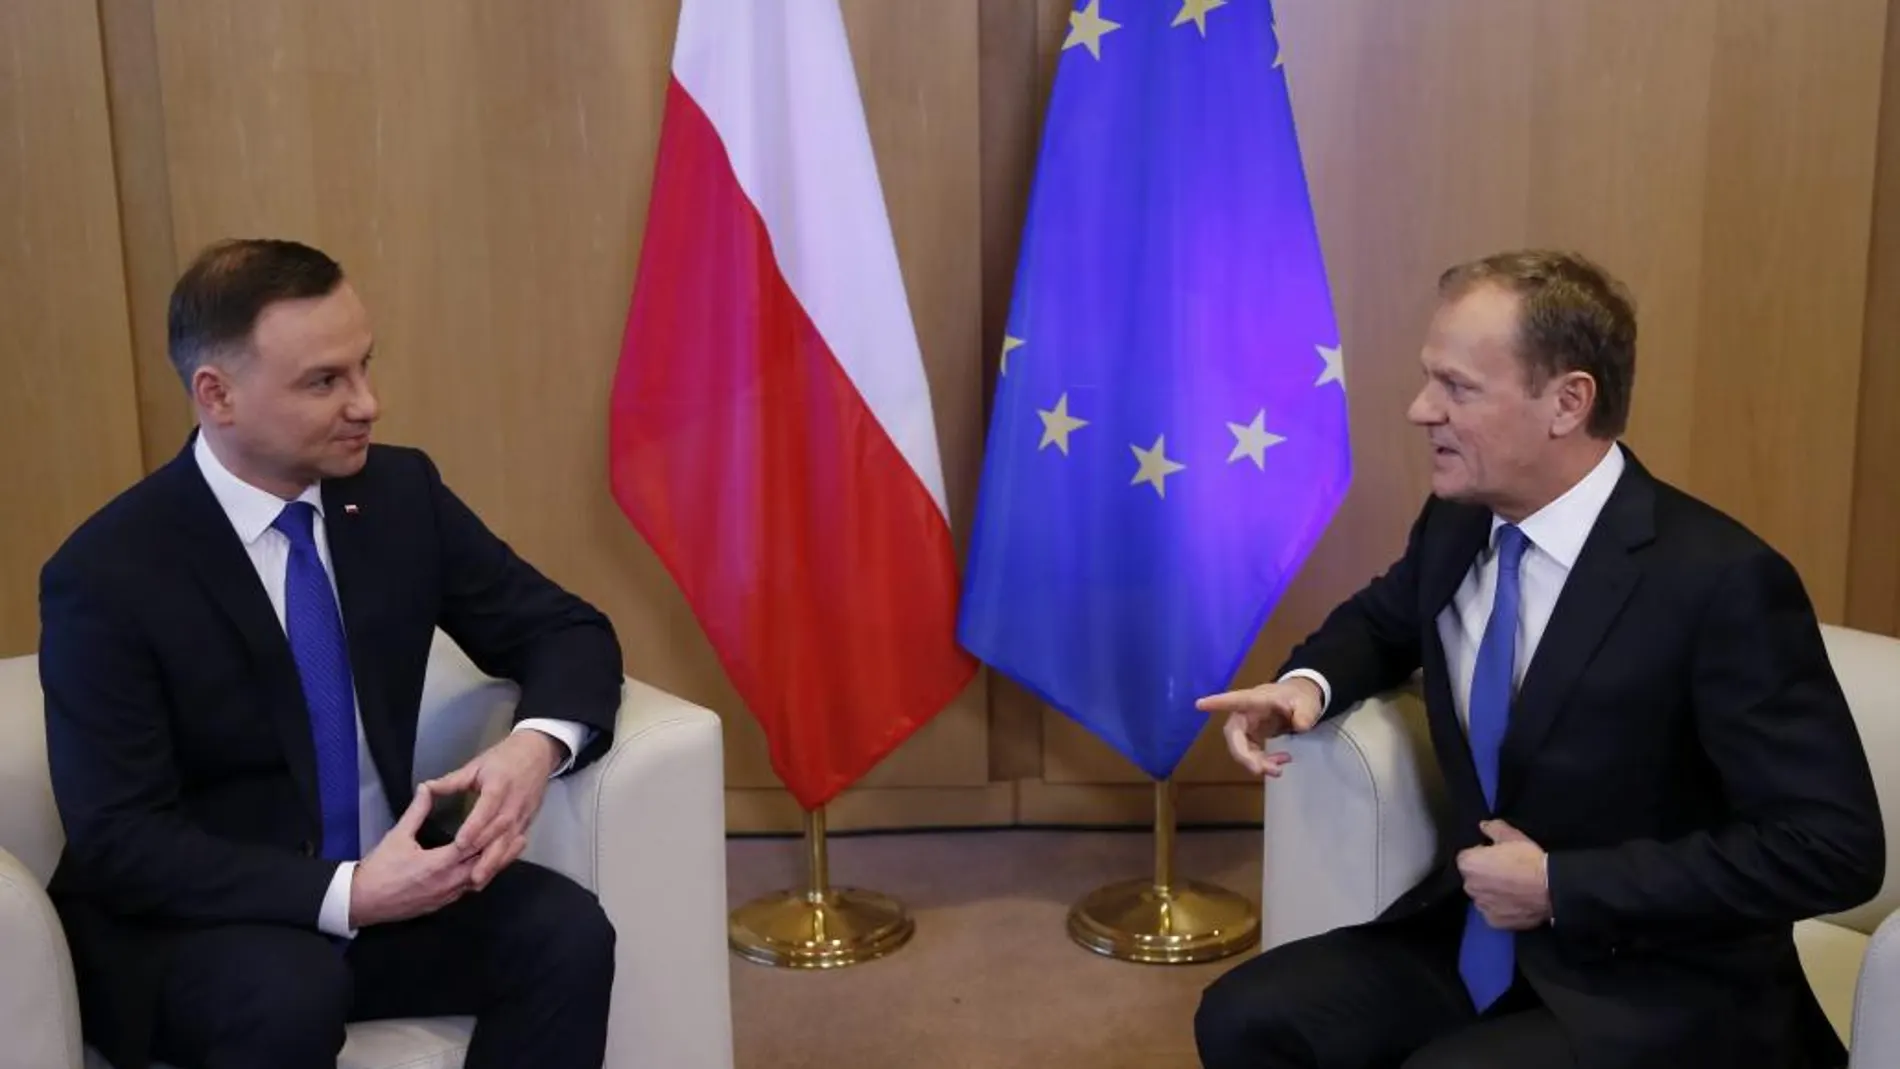 El presidente del Consejo Europeo, Donald Tusk (d), conversa con el presidente de Polonia, Andrzej Duda